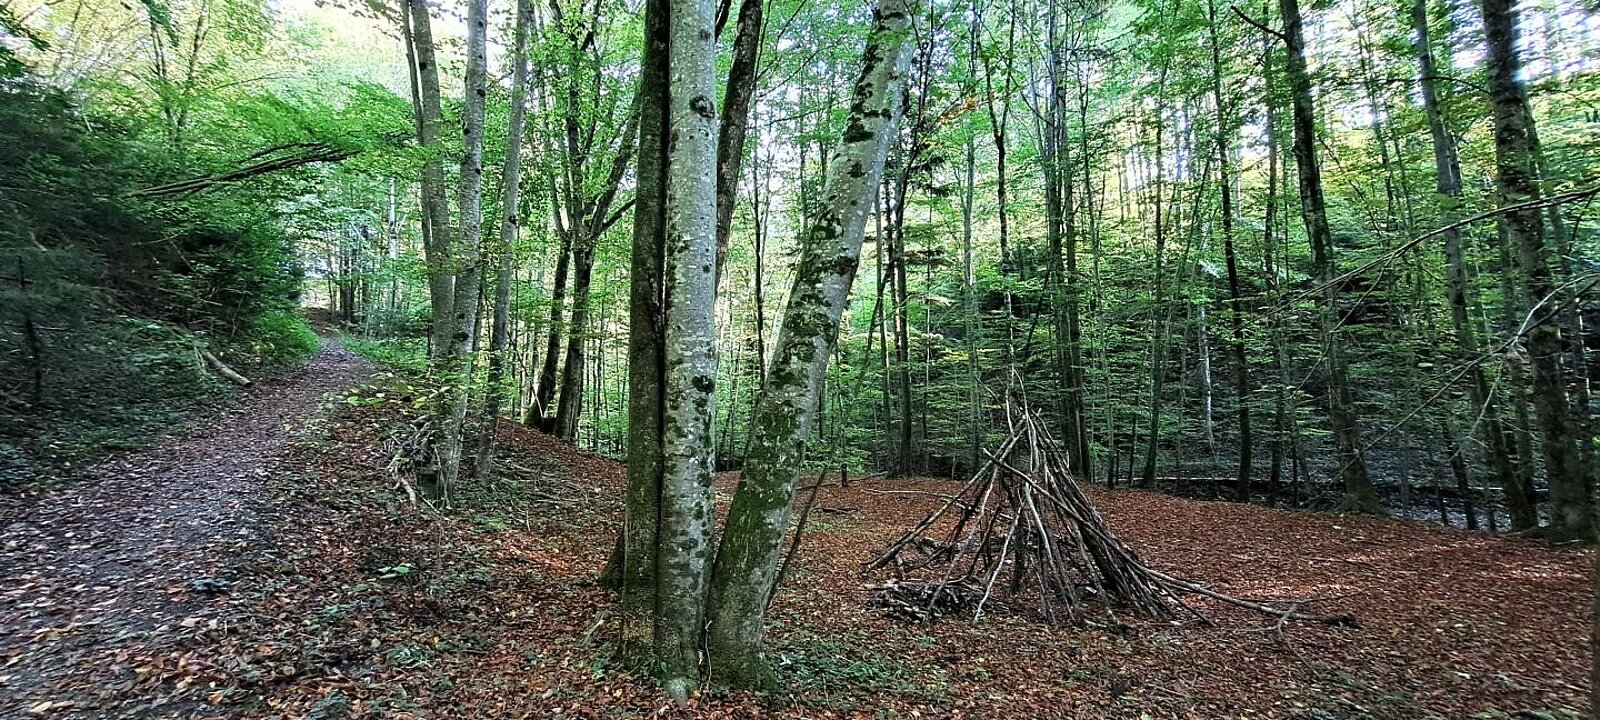 offentlicher Weg durch den eigenen Wald